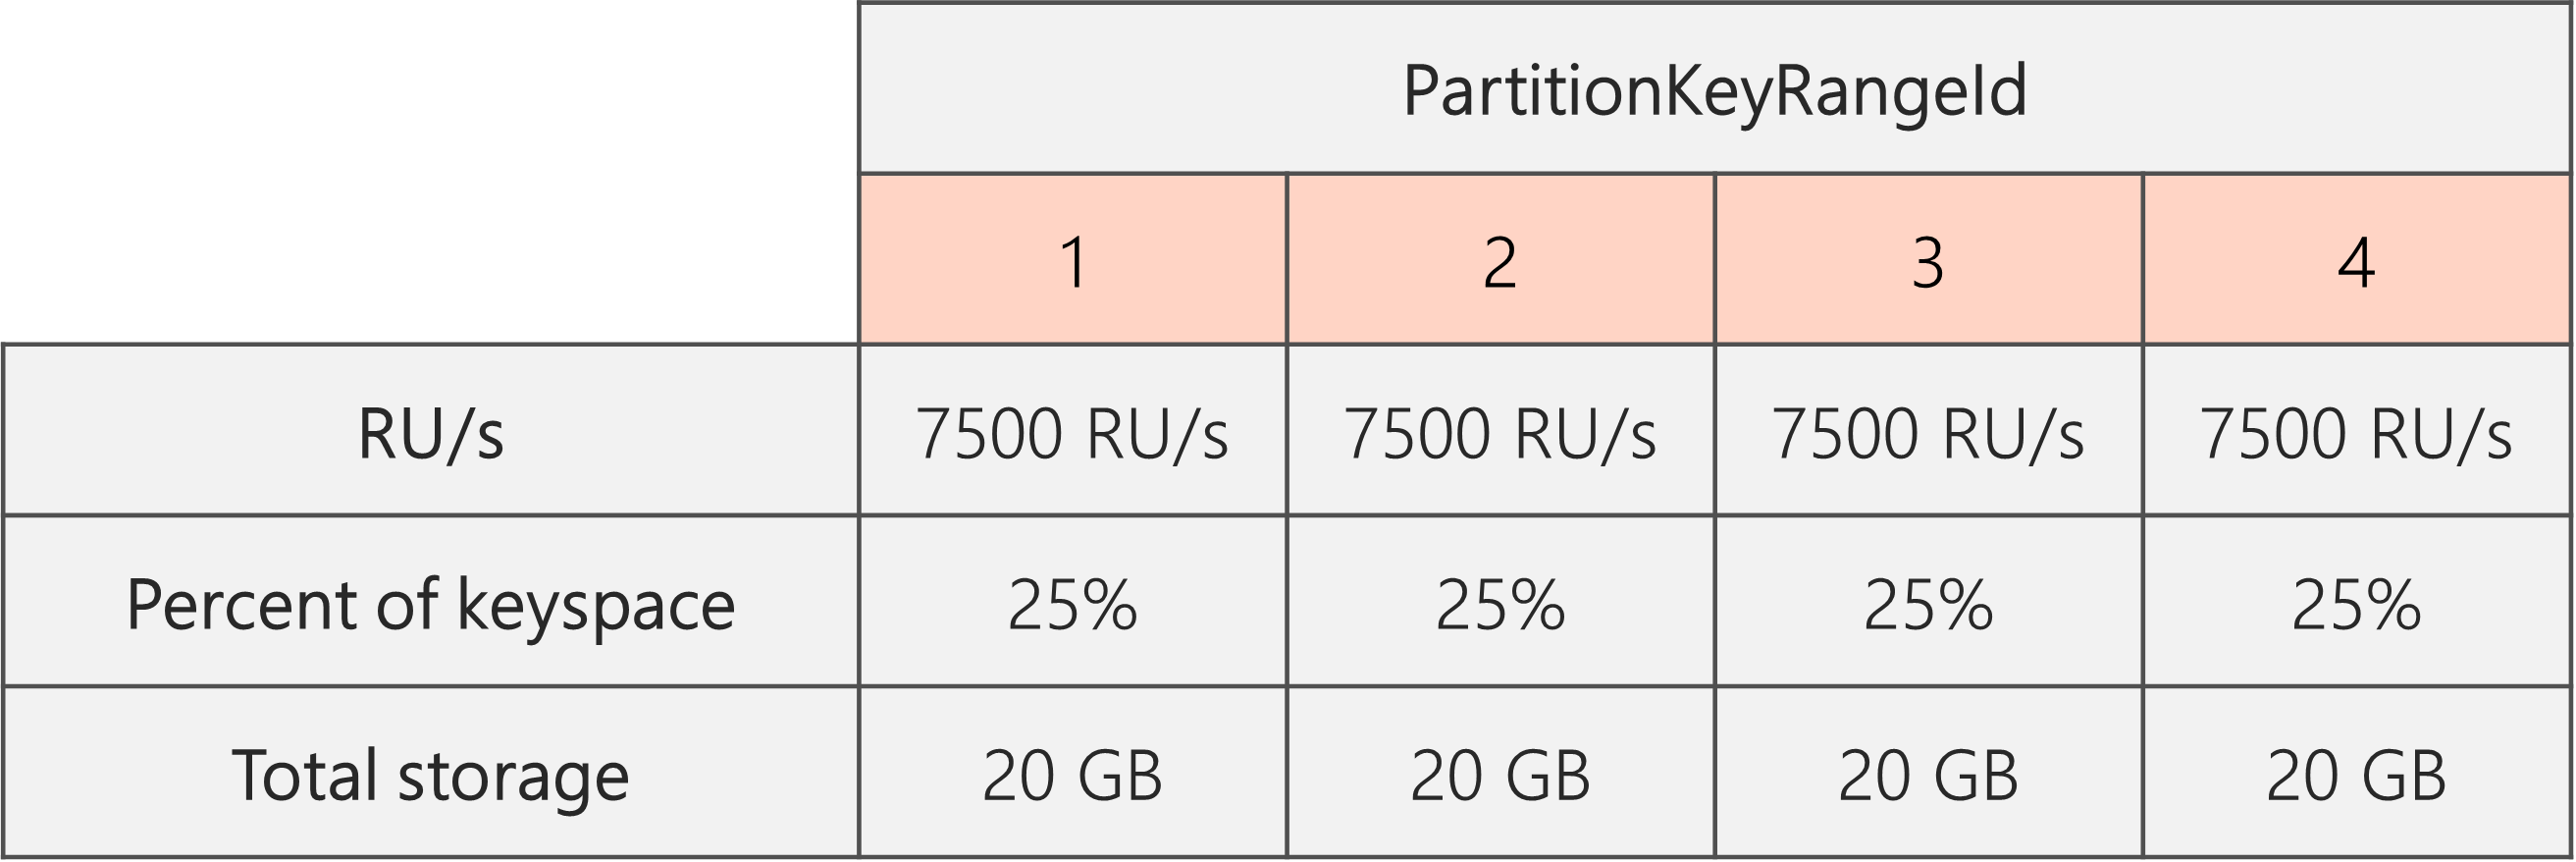 분할이 완료되고 RU/s가 40,000RU/s에서 30,000RU/s로 낮아진 후, 4개의 PartitionKeyRangeIds가 있고 각각에는 7500RU/s와 전체 키스페이스의 25%(20GB)가 있습니다.